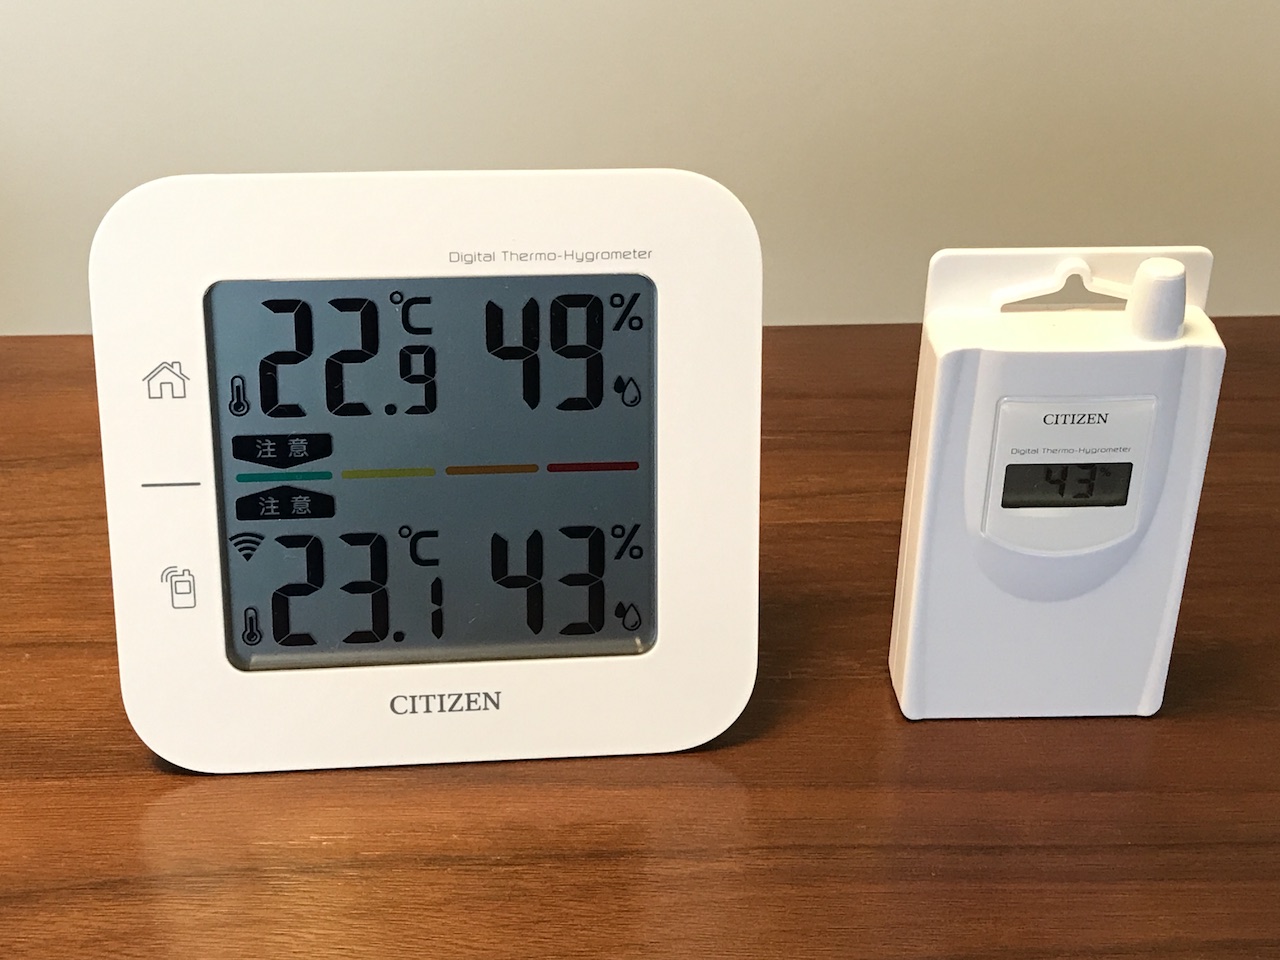 【購入レビュー】コードレス温湿度計THD501なら離れた子供の寝室の温度確認にも便利で汗の心配も軽減できる